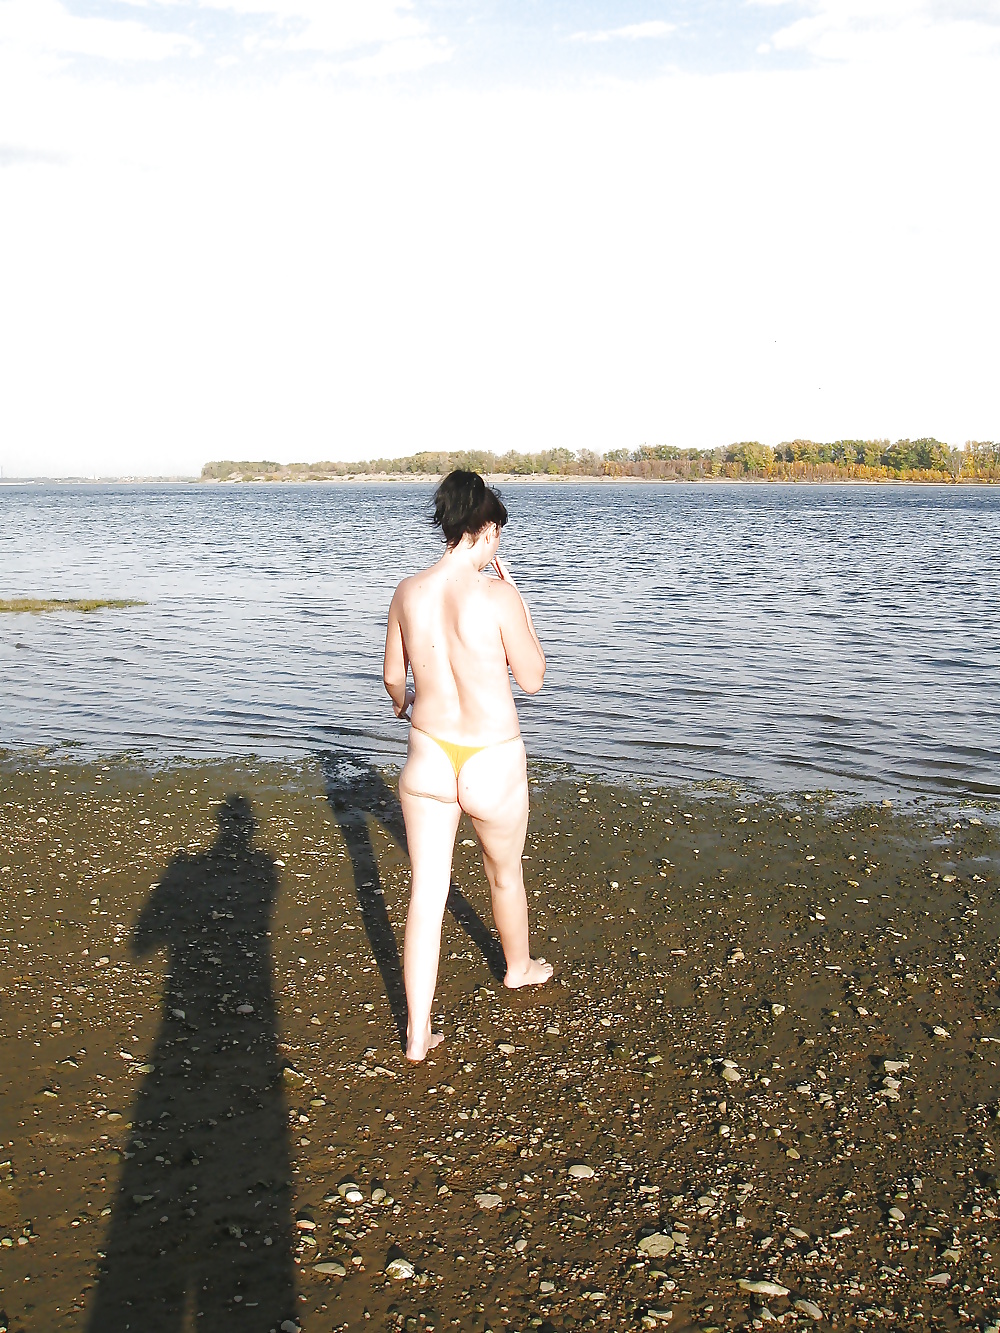 Lili sulla spiaggia in topless con mutandine gialle
 #29389032